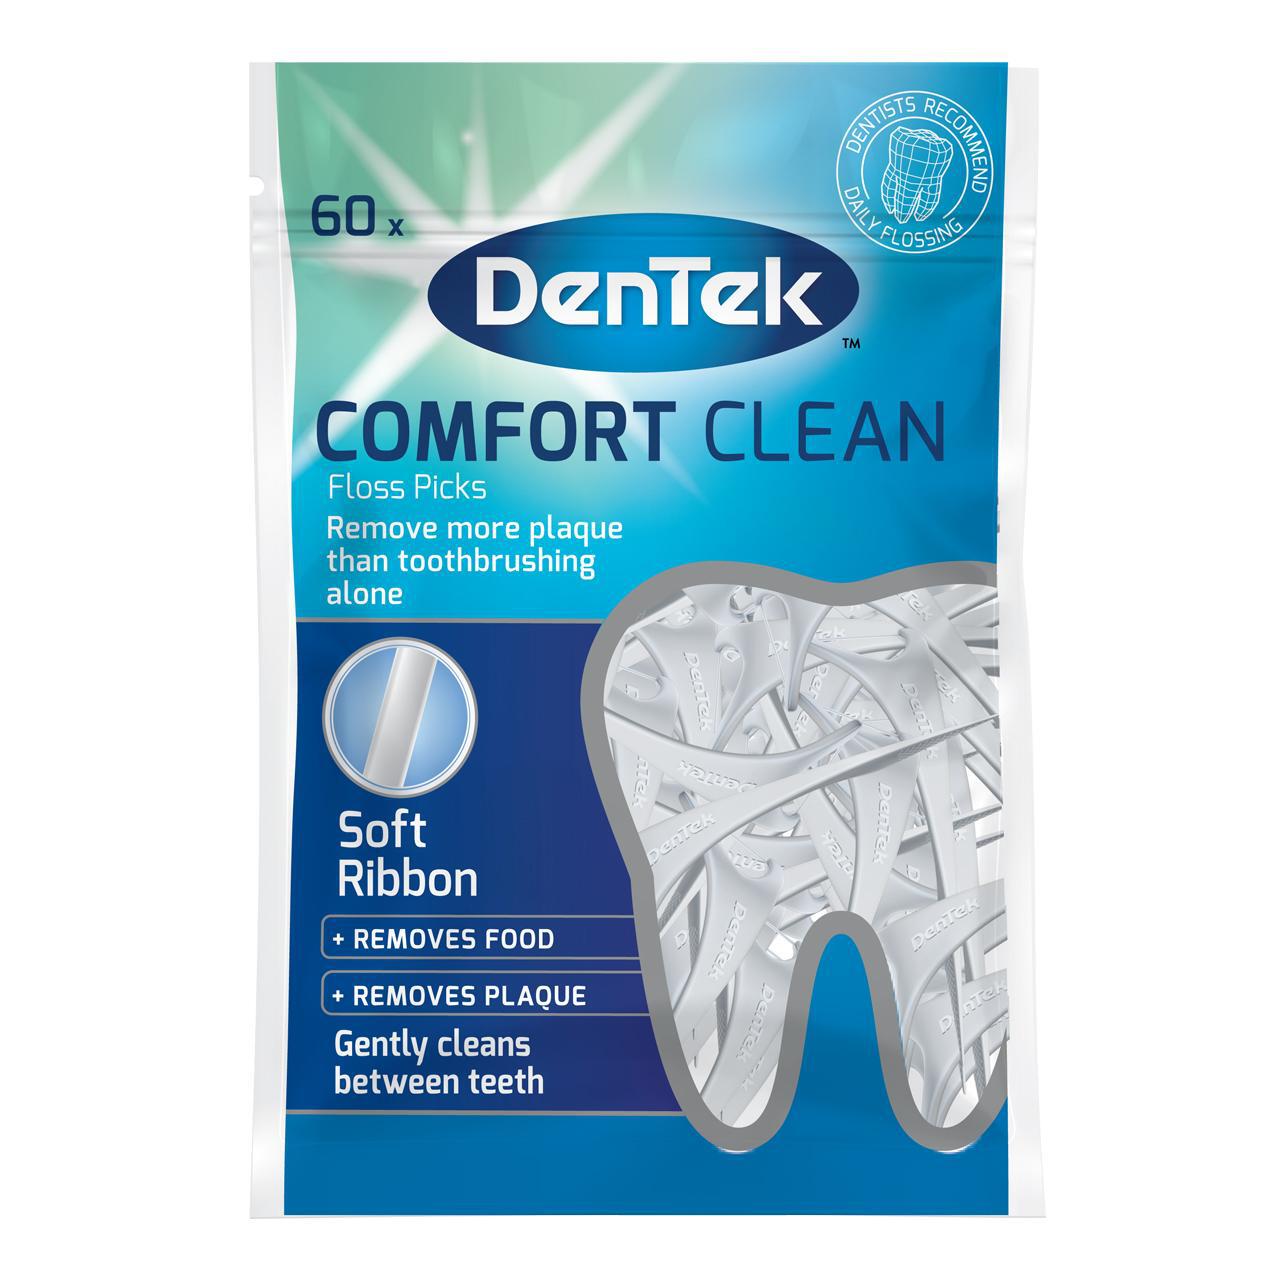 DenTek Comfort Clean Floss Pick 60 per pack